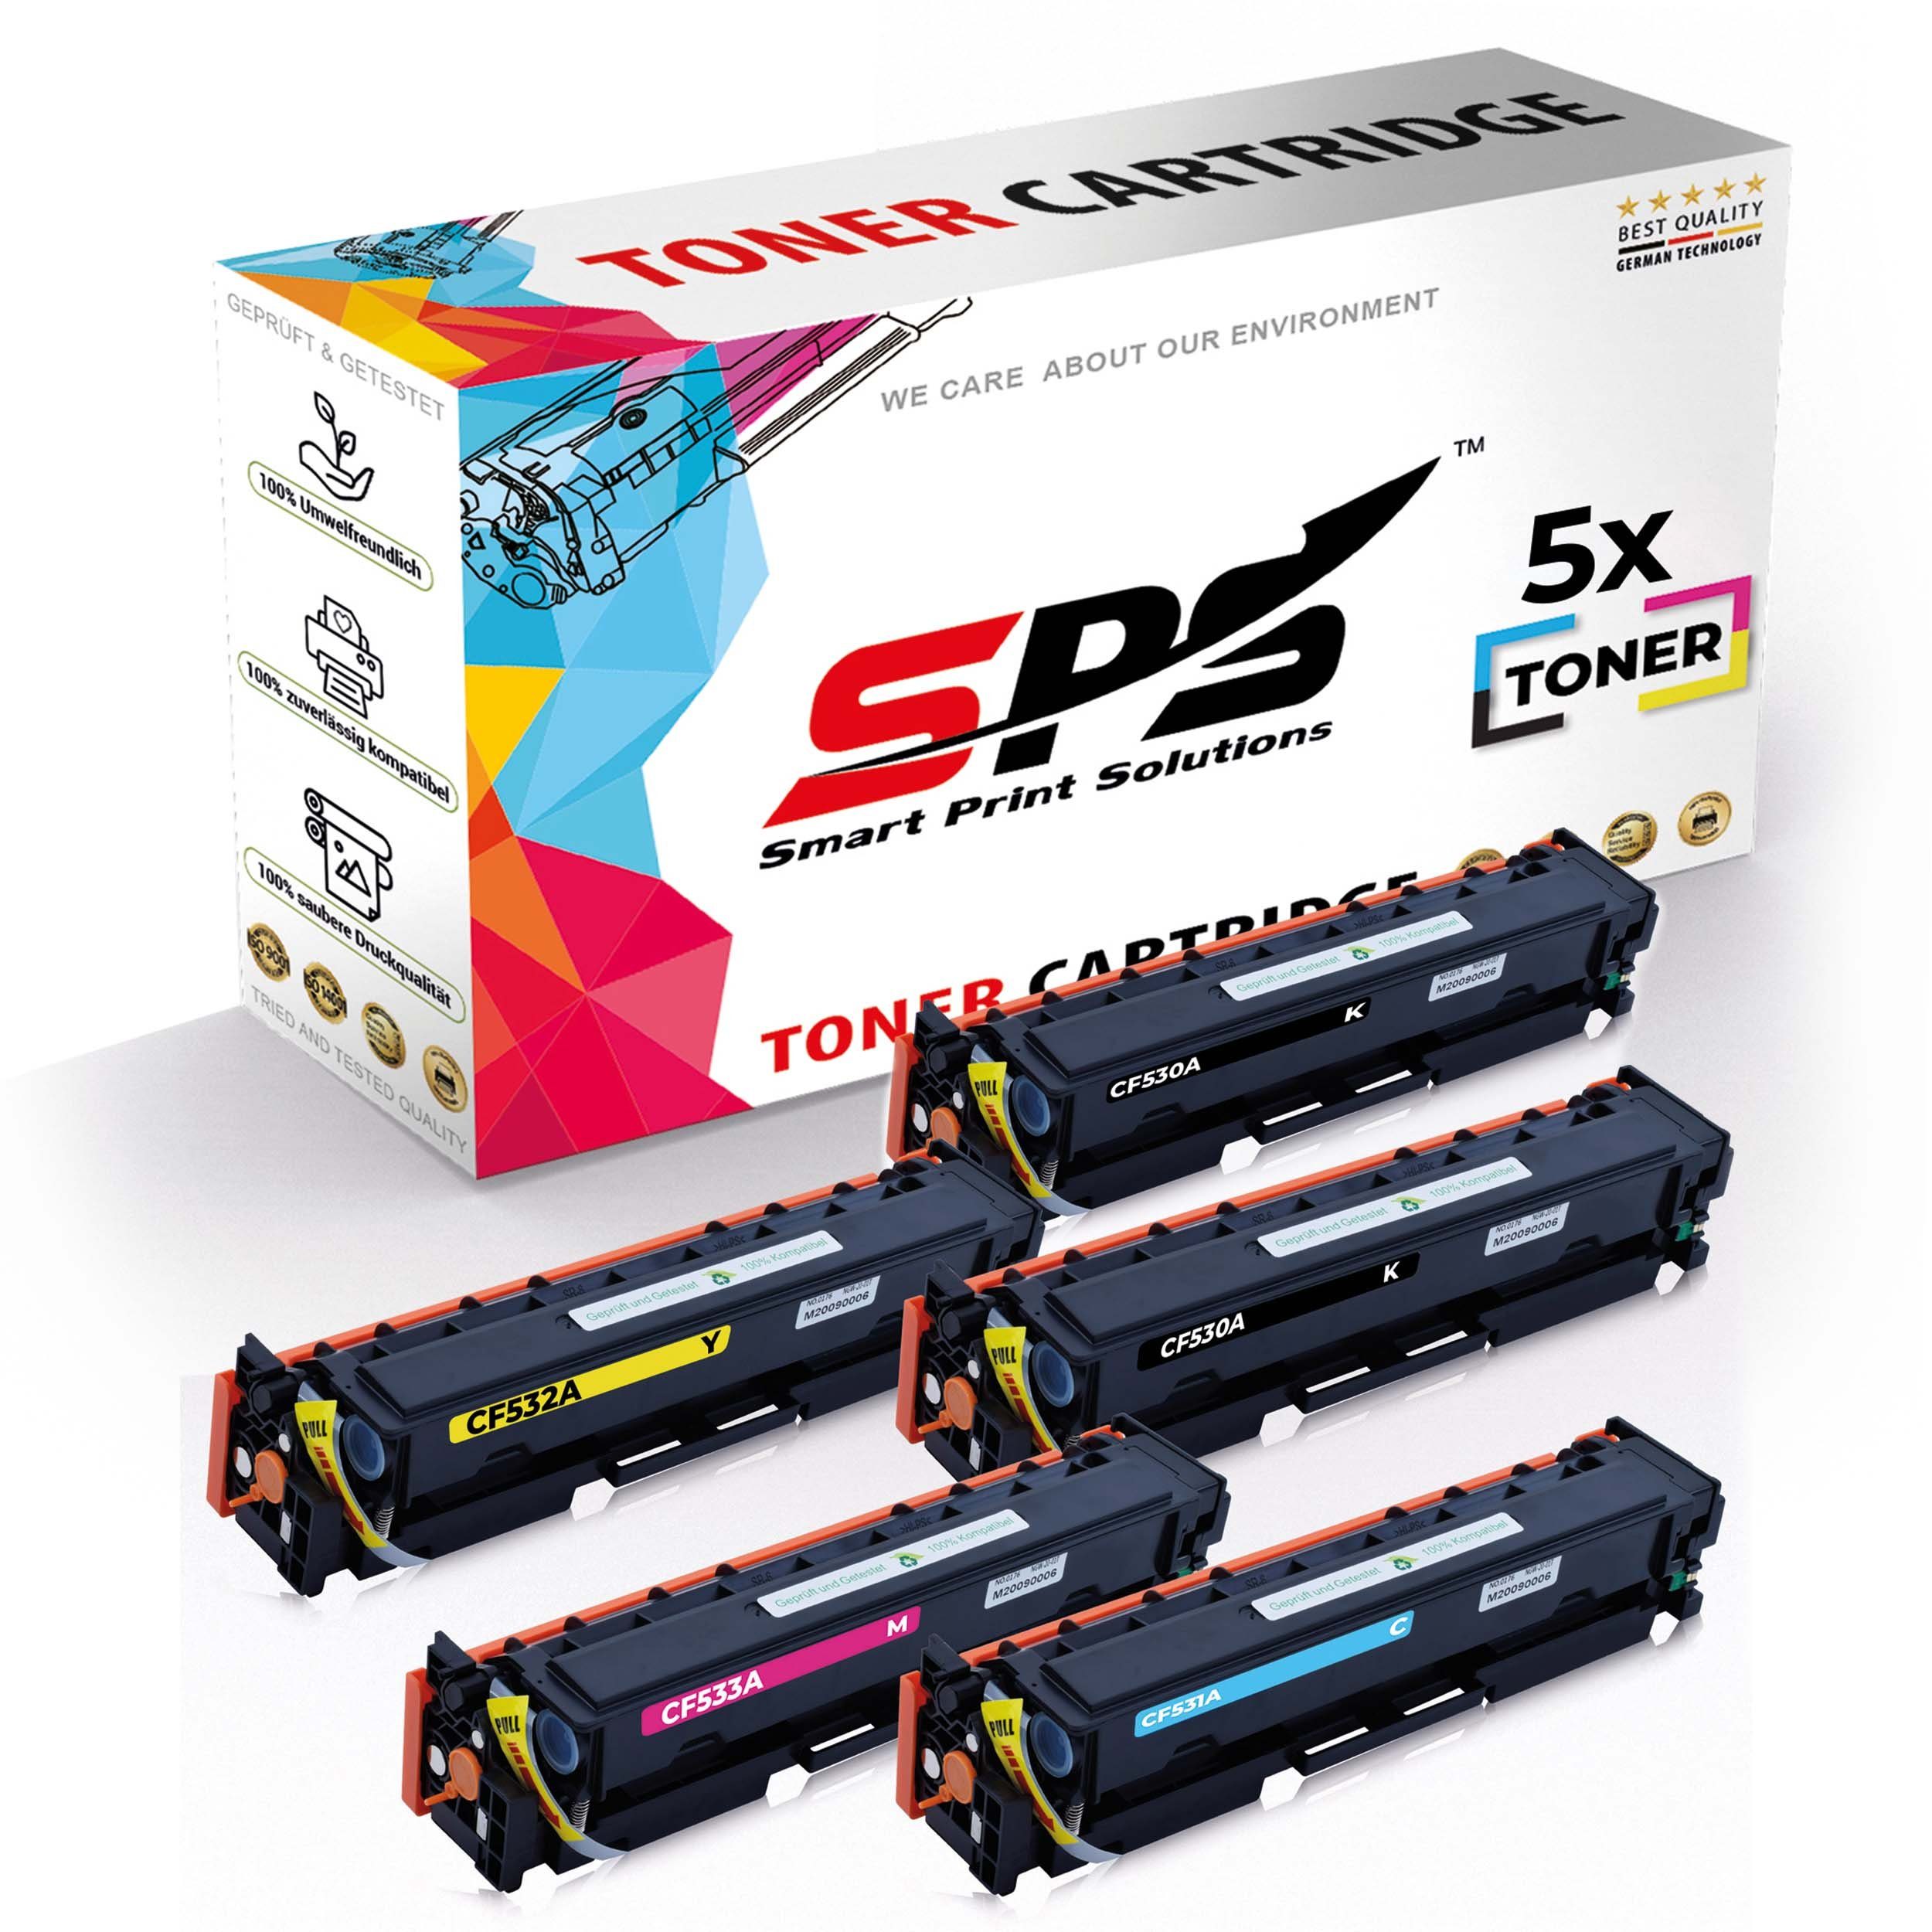 SPS Tonerkartusche 5x Multipack Set Kompatibel für HP Color LaserJet CP 2000 Series (304A, (5er Pack)